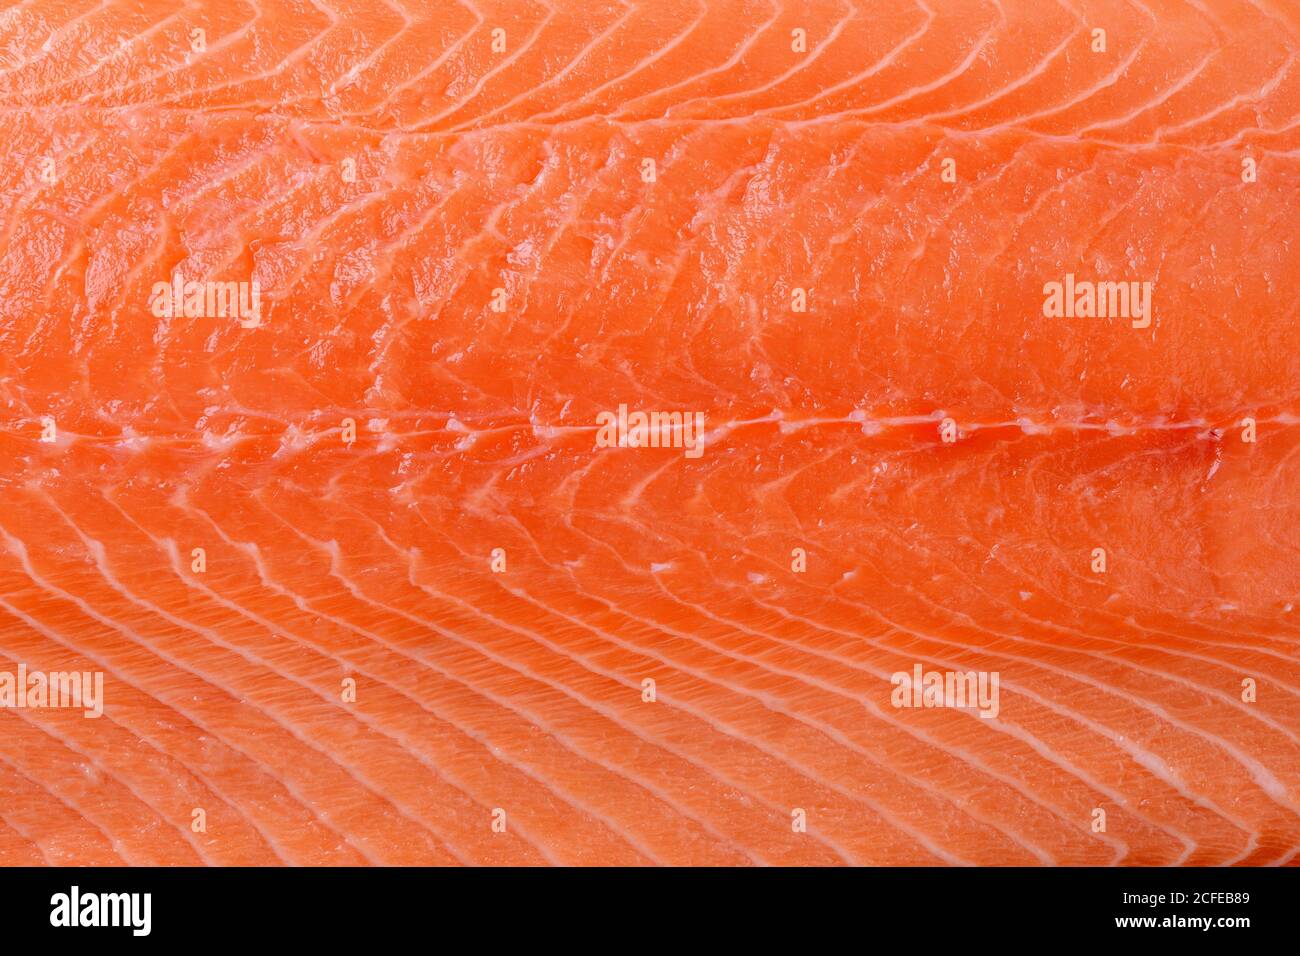 Filete de salmón crudo de fondo. Superficie de carne de salmón deshuesada fresca y refrigerada. Elemento de diseño para una alimentación saludable, ingrediente de recetas de marisco. Foto de stock